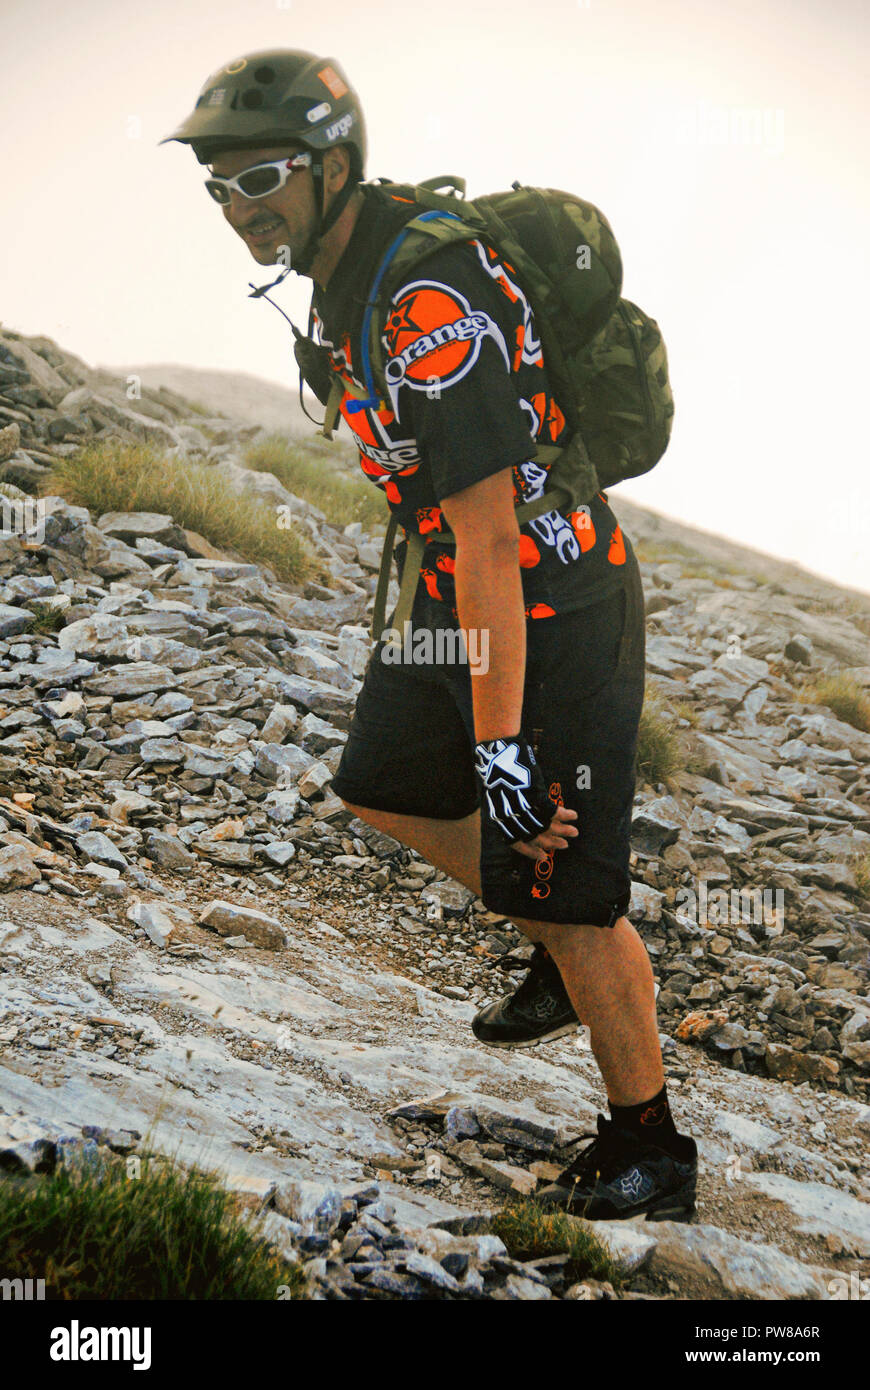 Griechenland, Berg Olymp, ein Bergsteiger auf dem Weg in der Nähe der Gipfel Mytikas (2,917 m. Höhe), 27. Juli 2012. Stockfoto